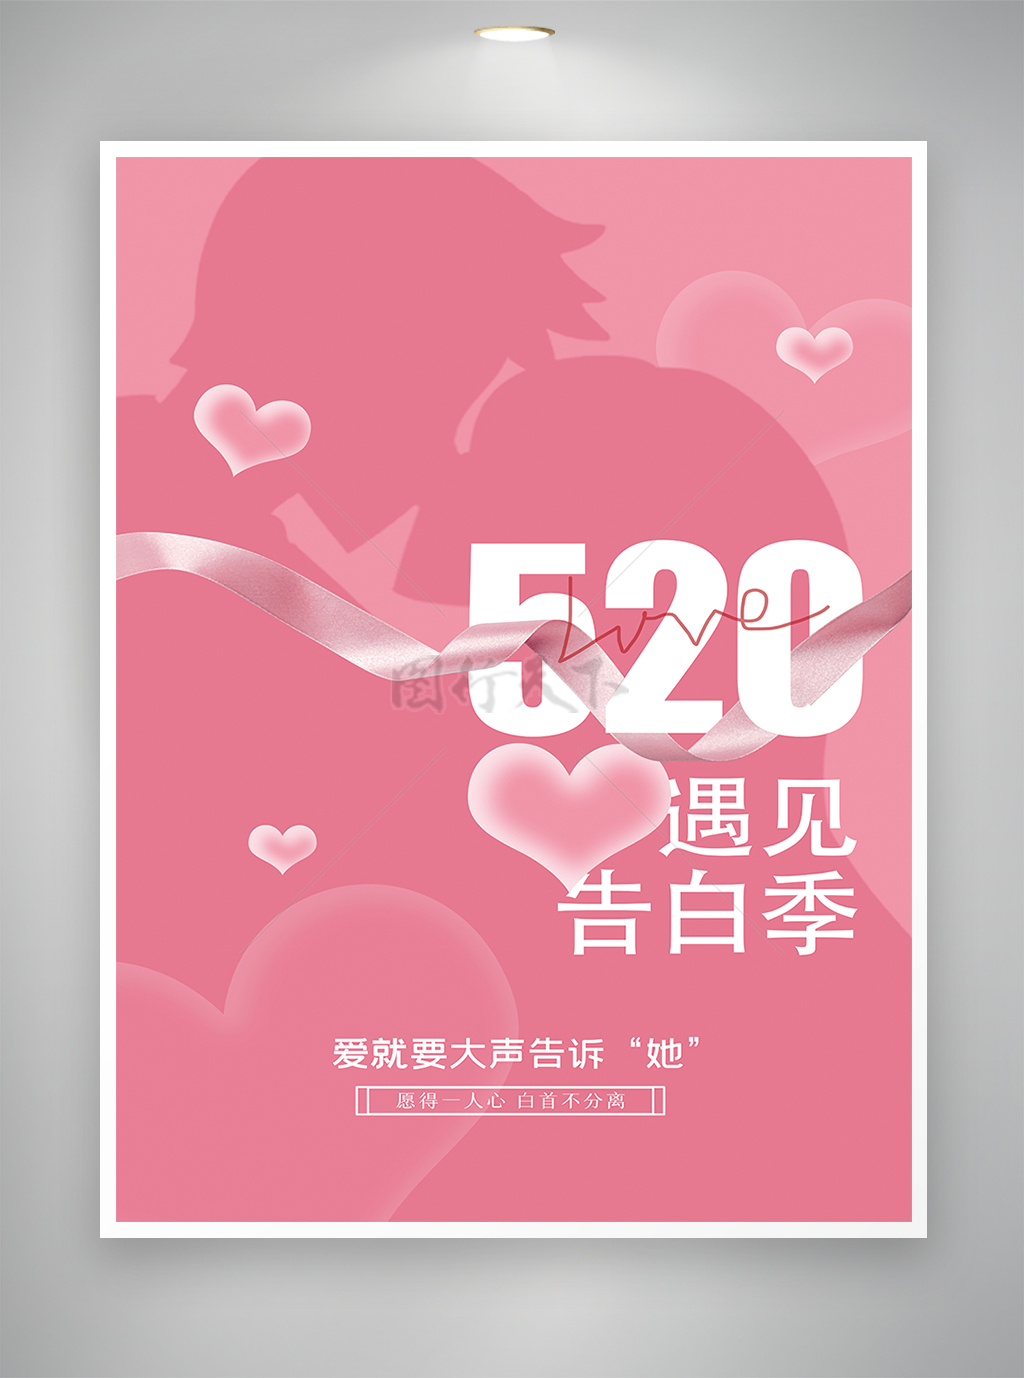 遇见告白季520情人节节日宣传海报